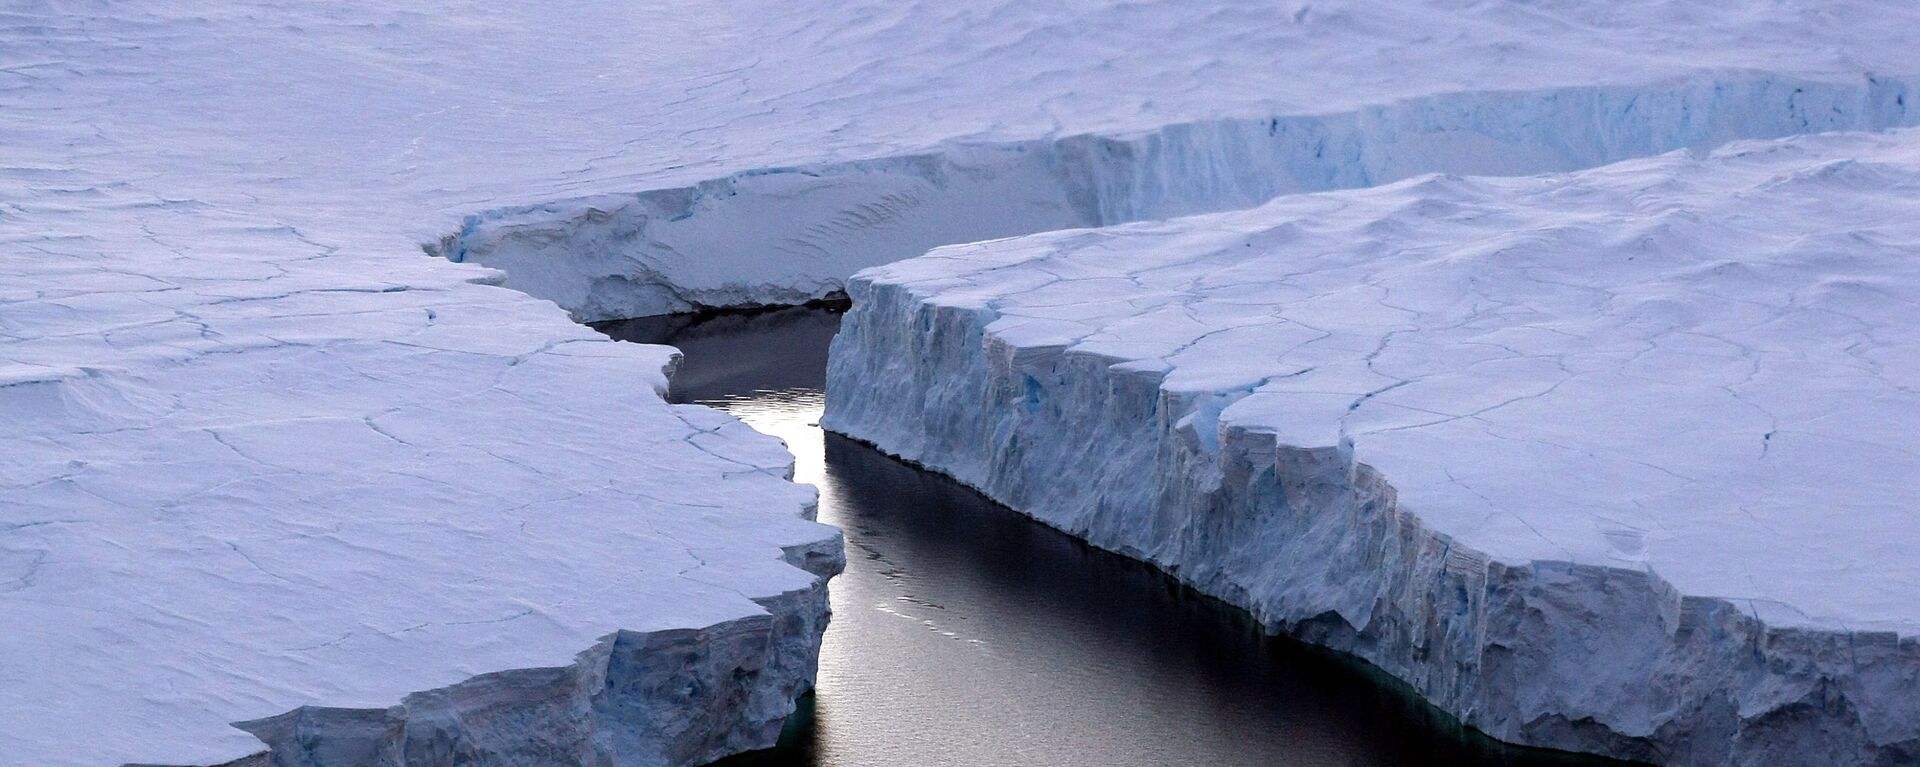 صورة لجبل جليدي ضخم آيسبيرغ آر (iceberg (R)) ينشق من ساحل نوكس (Knox Coast) في المنطقة الأسترالية من القطب الجنوبي، 11 يناير/ كانون الثاني 2008. وقالت لجنة الأمم المتحدة في 23 سبتمبر/ أيلول 2013 أنها متأكدة أكثر من ذي قبل من أن البشر وراء سبب الاحتباس الحراري للكرة الأرضية، وتوقعت ارتفاع درجات الحرارة بنسبة 0.3 إلى 4.8 درجة مئوية خلال هذا القرن. - سبوتنيك عربي, 1920, 04.01.2022